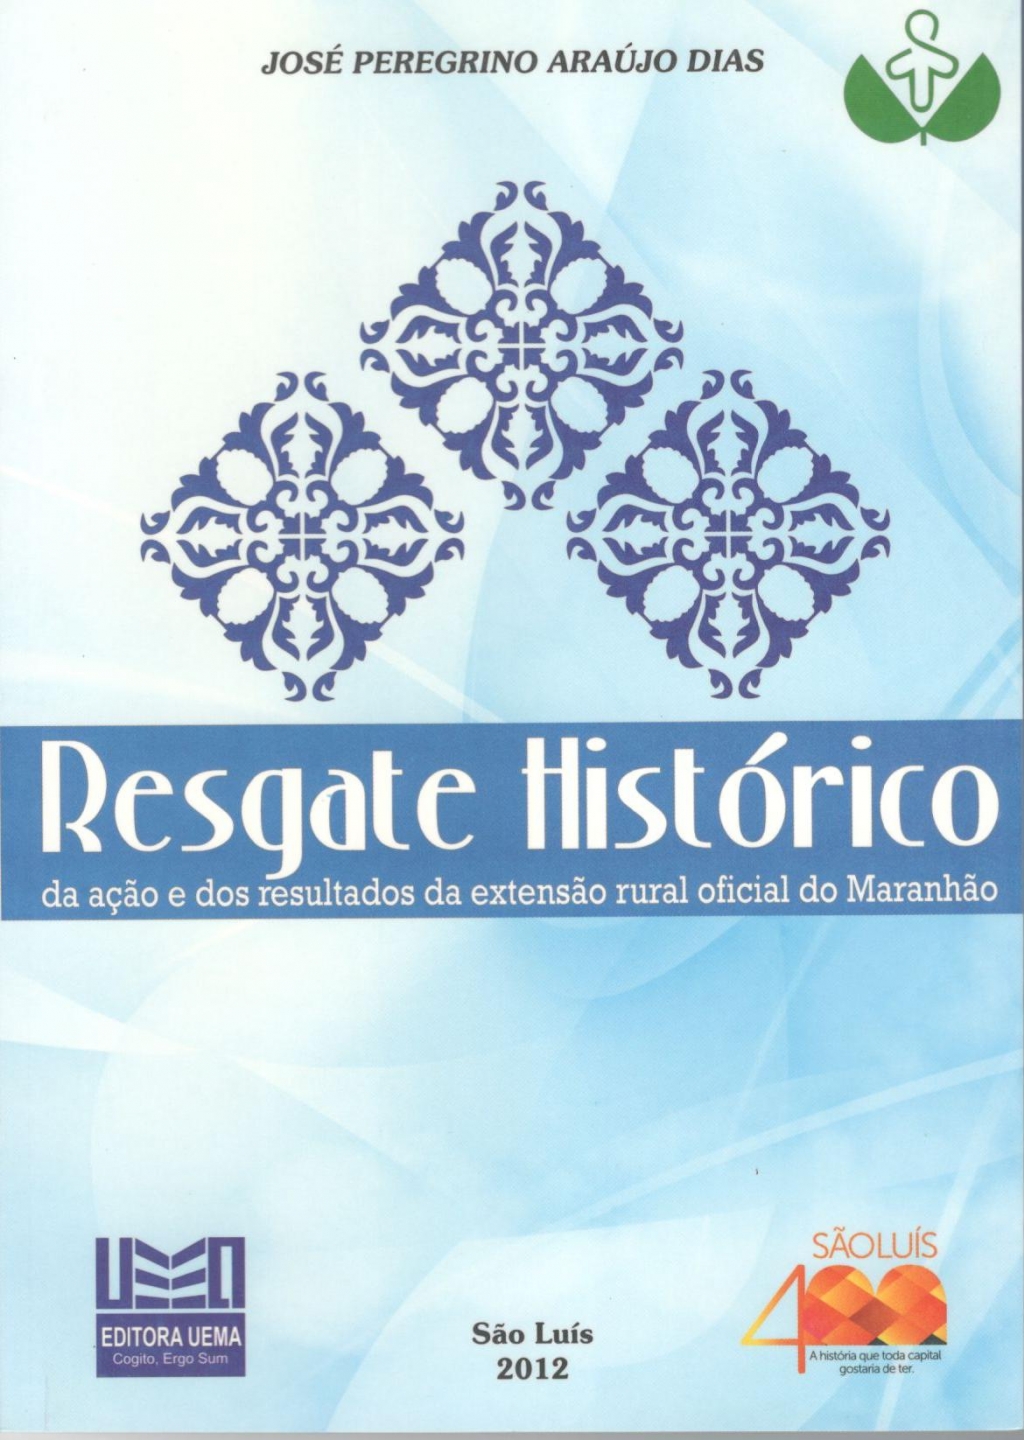 Coleção 400 Anos - Resgate histórico da ação e dos resultados da extensão rural oficial do Maranhão